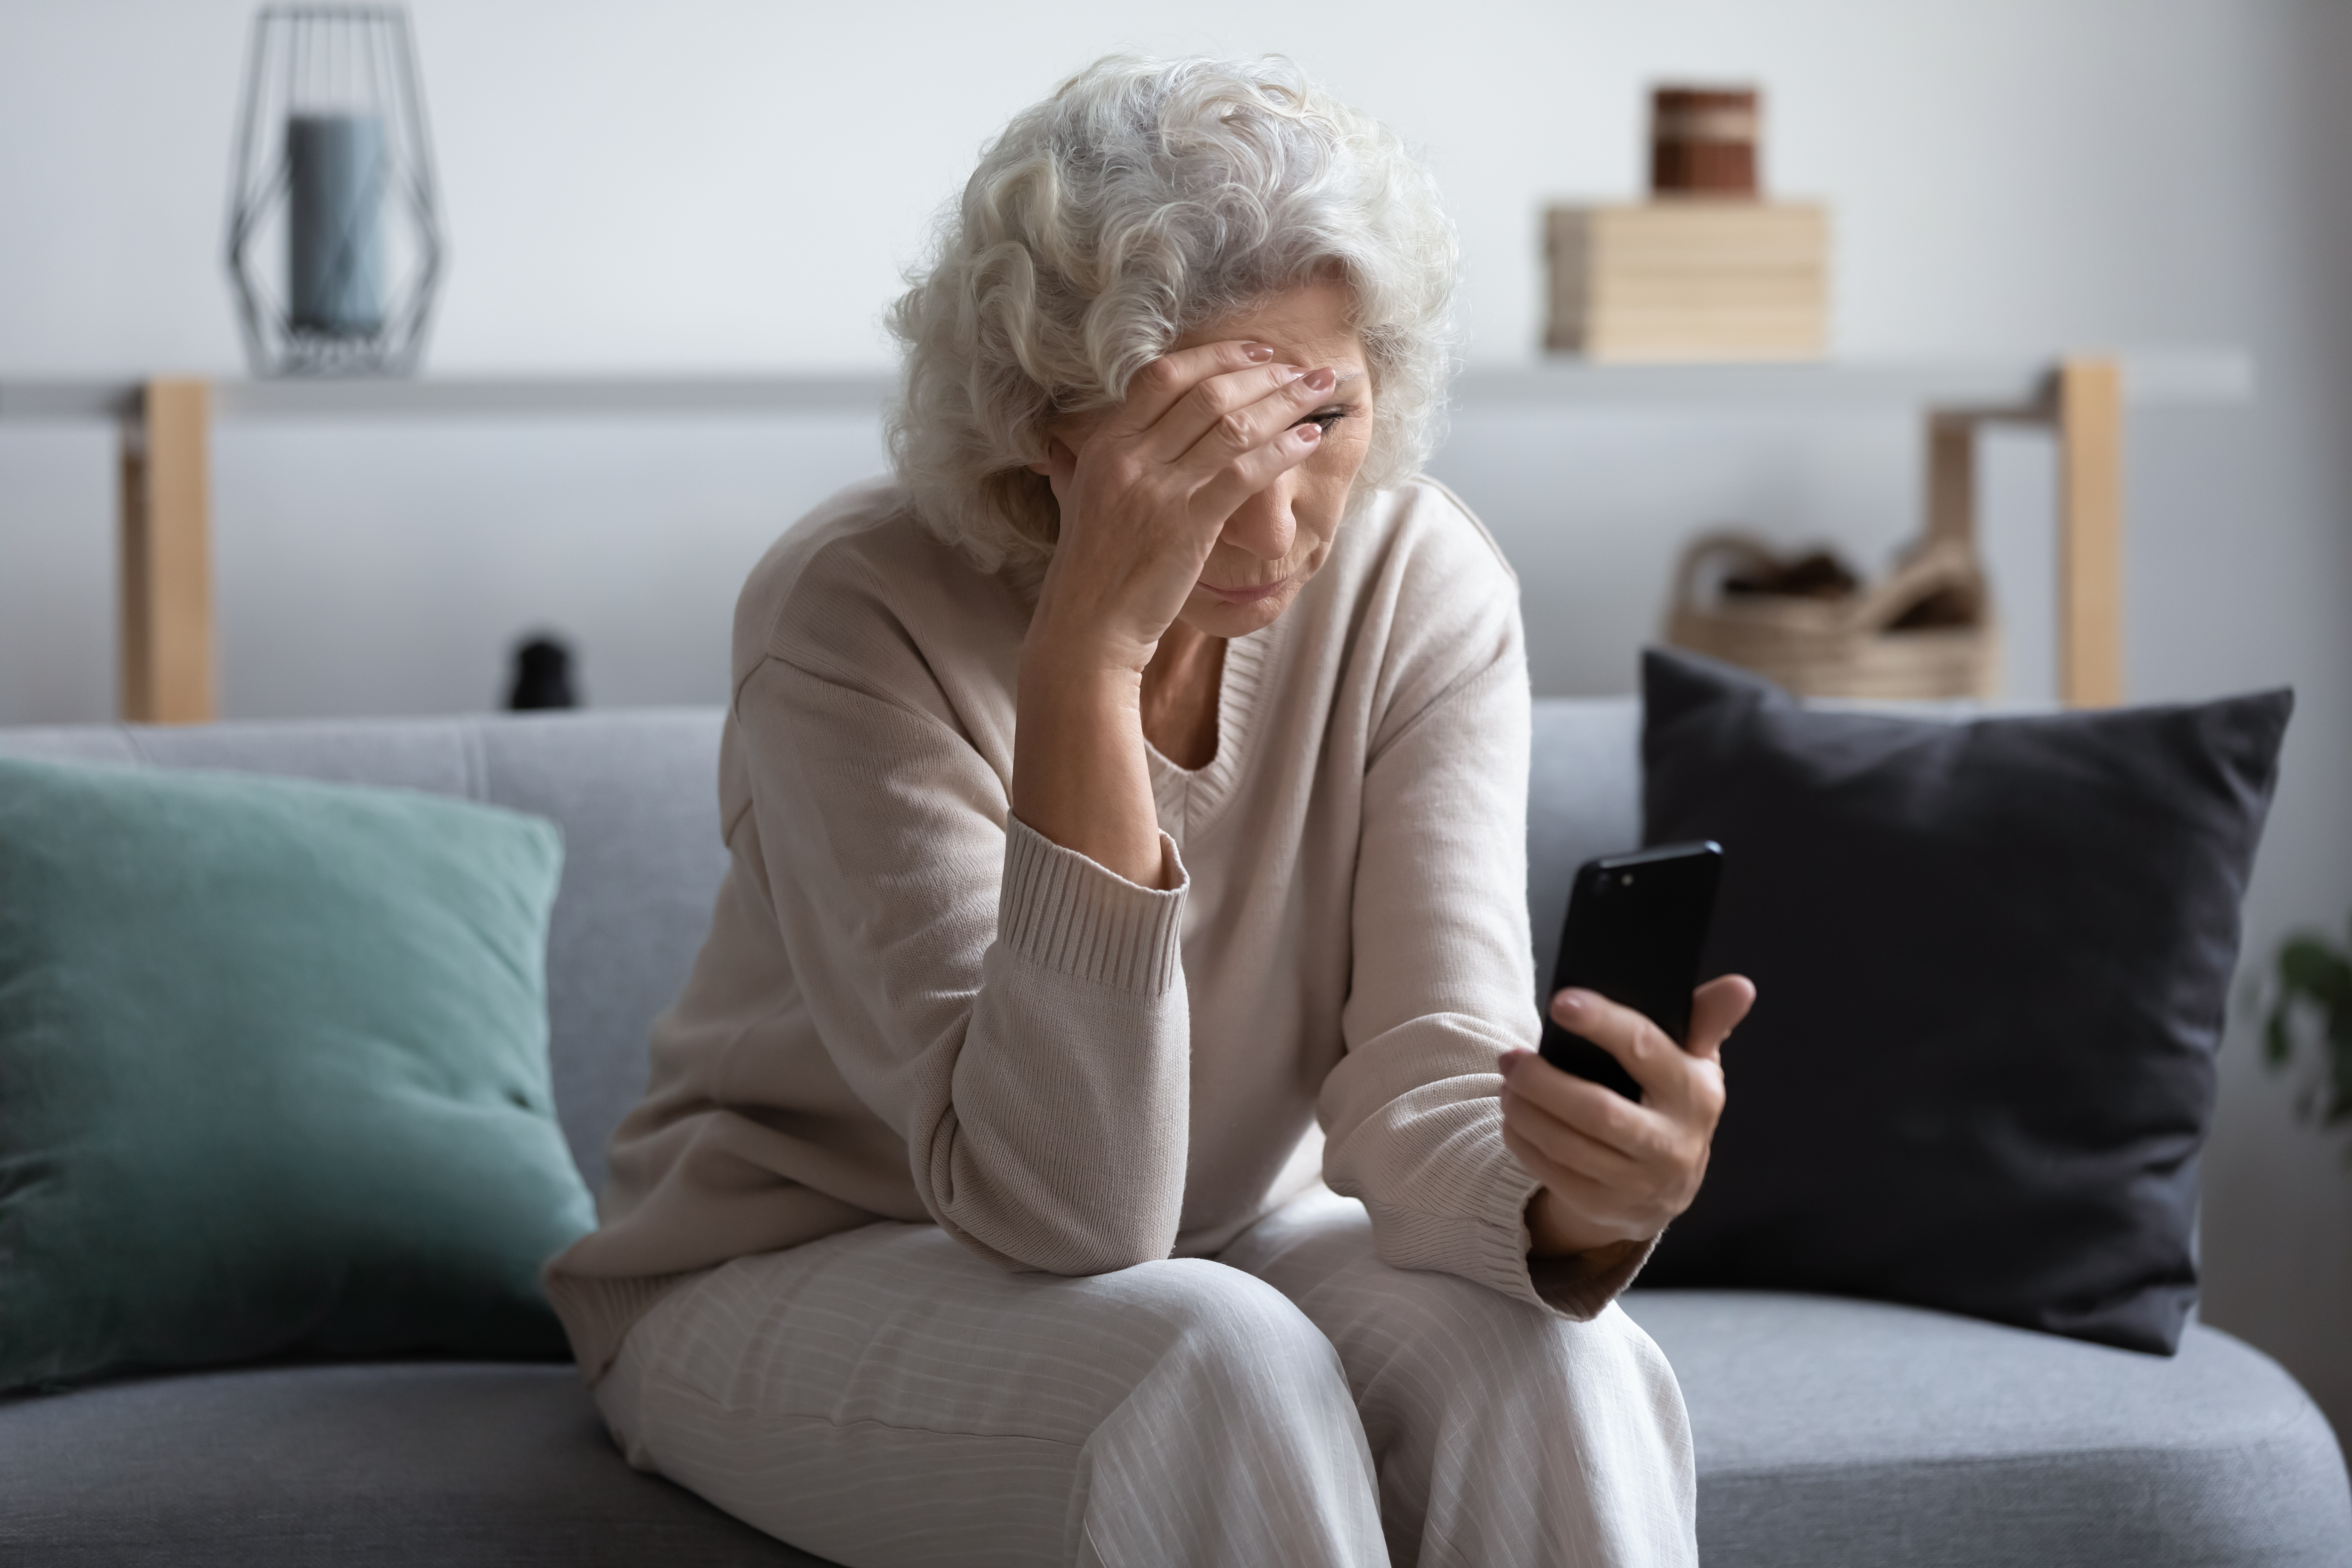 Una mujer parece estresada mientras habla por teléfono | Foto: Shutterstock